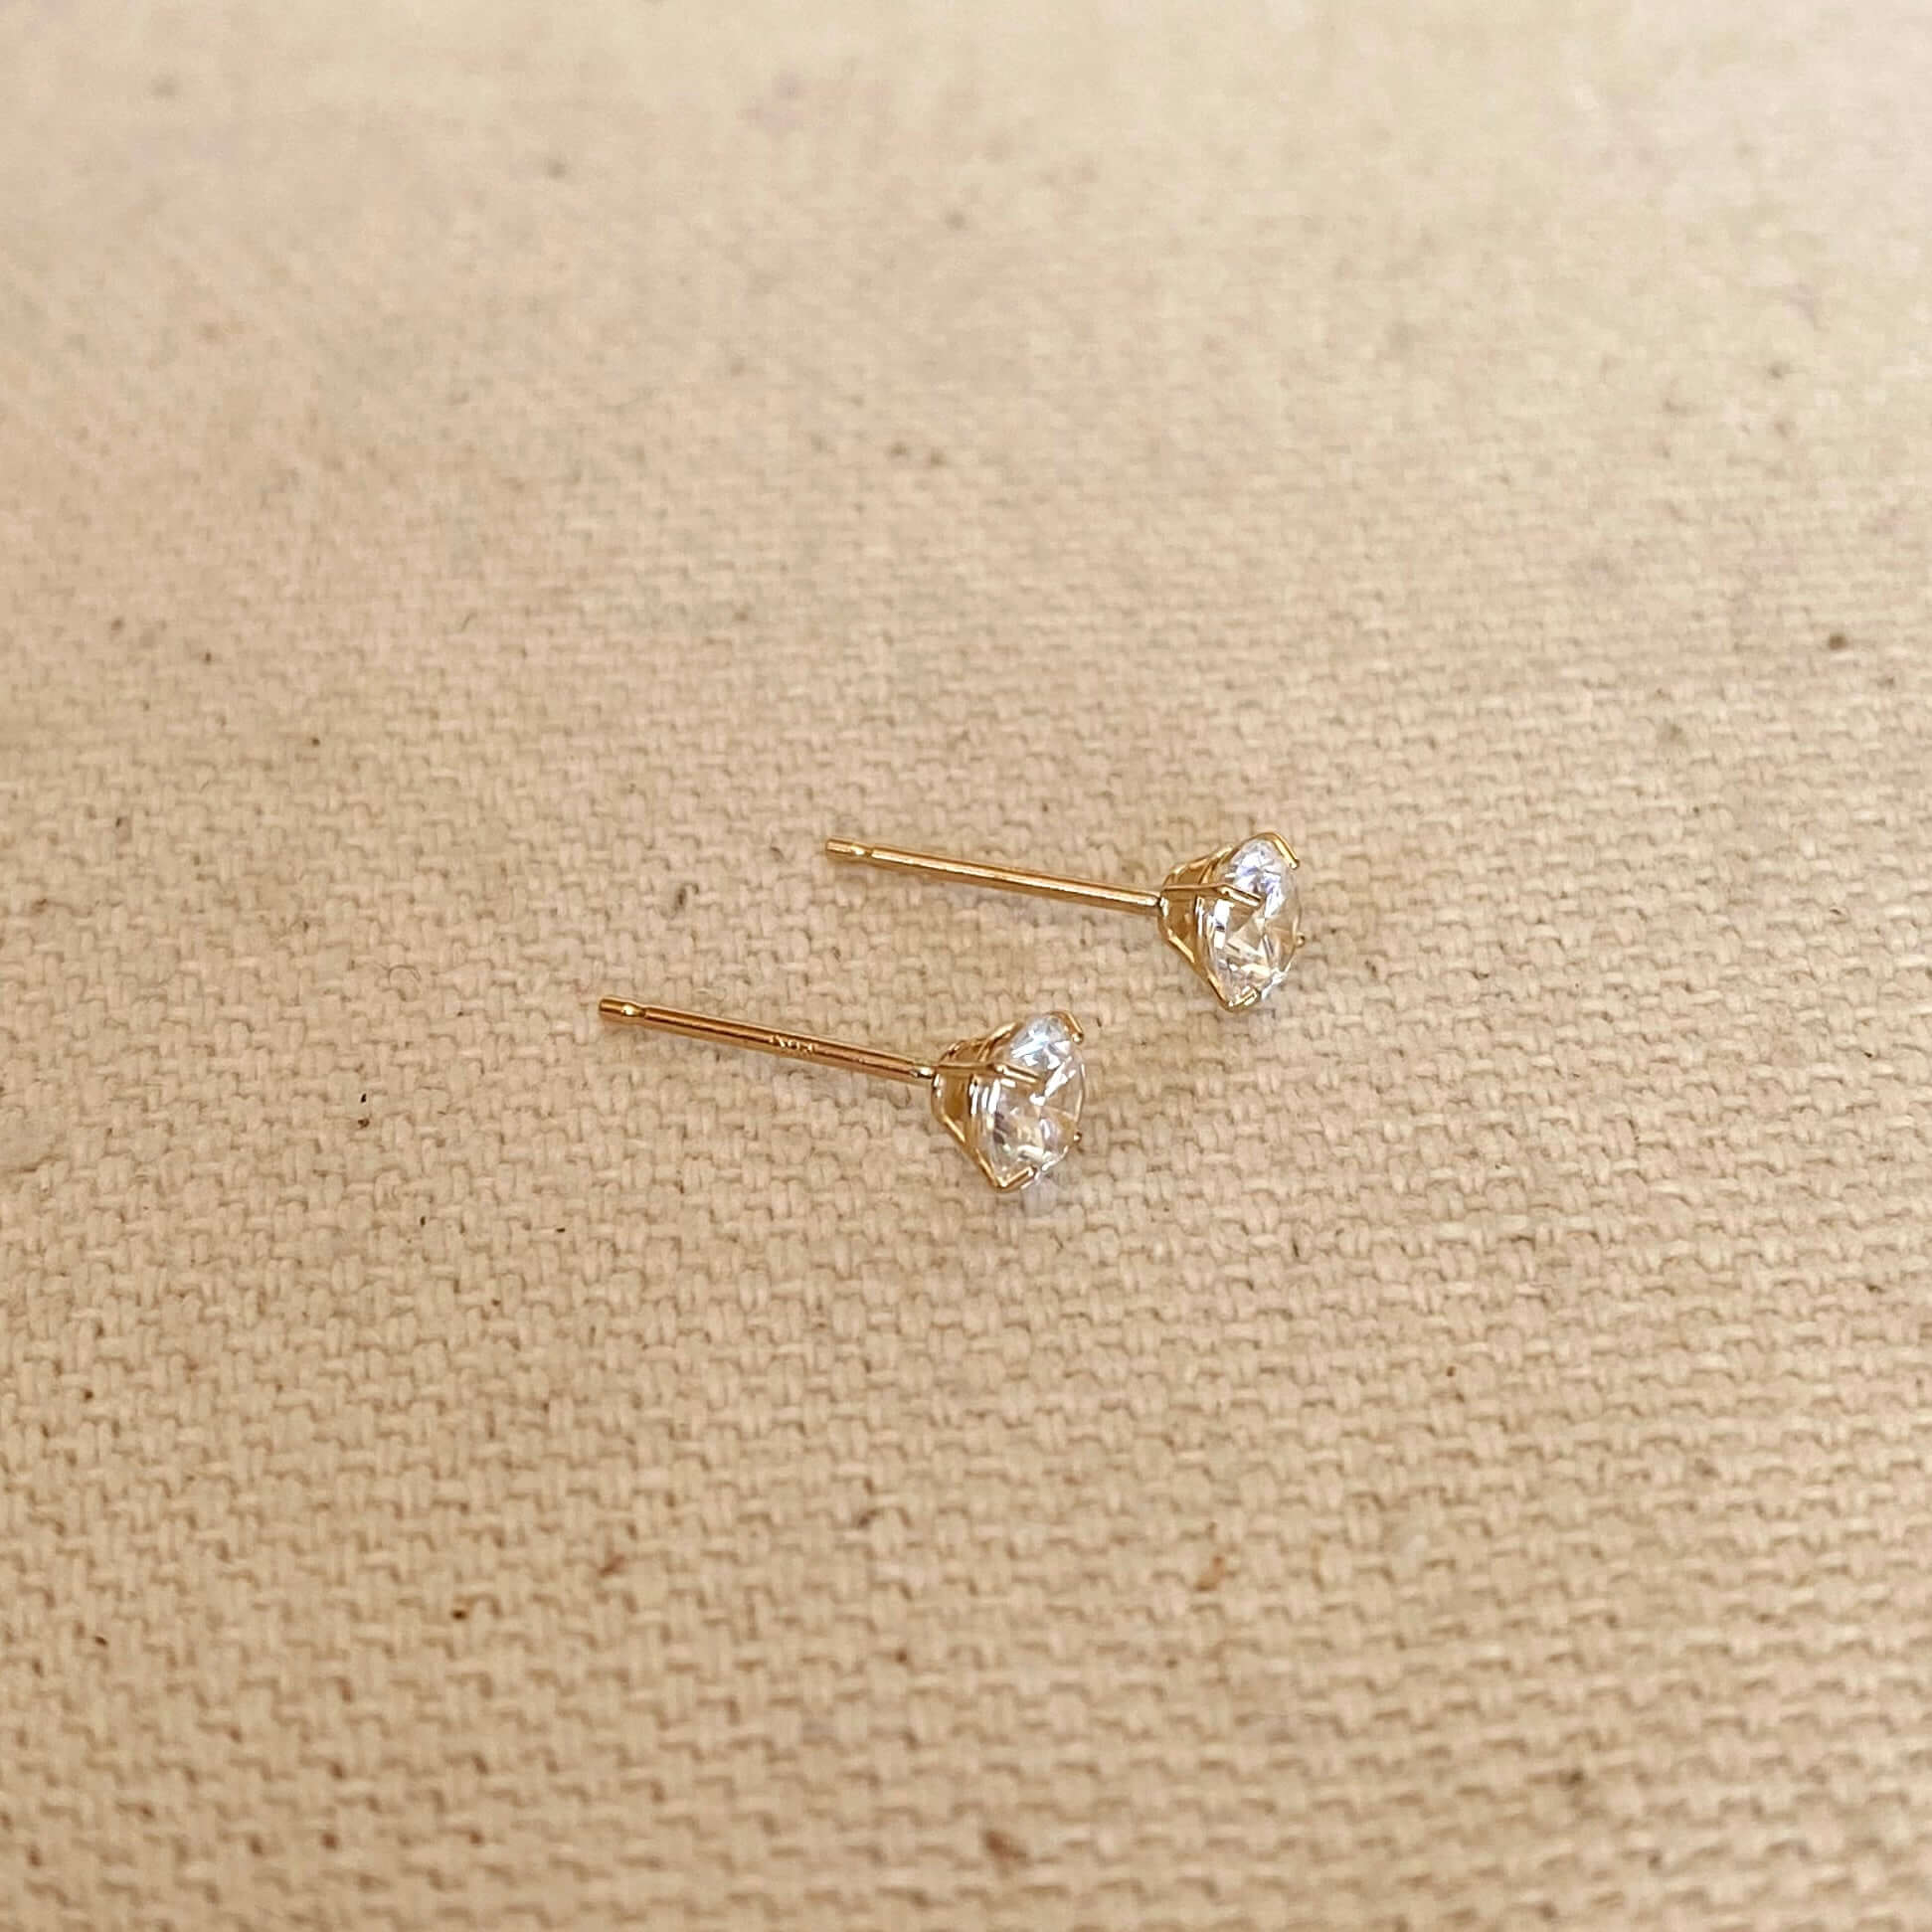 4mm Gold Cubic Zirconia Stud Earrings